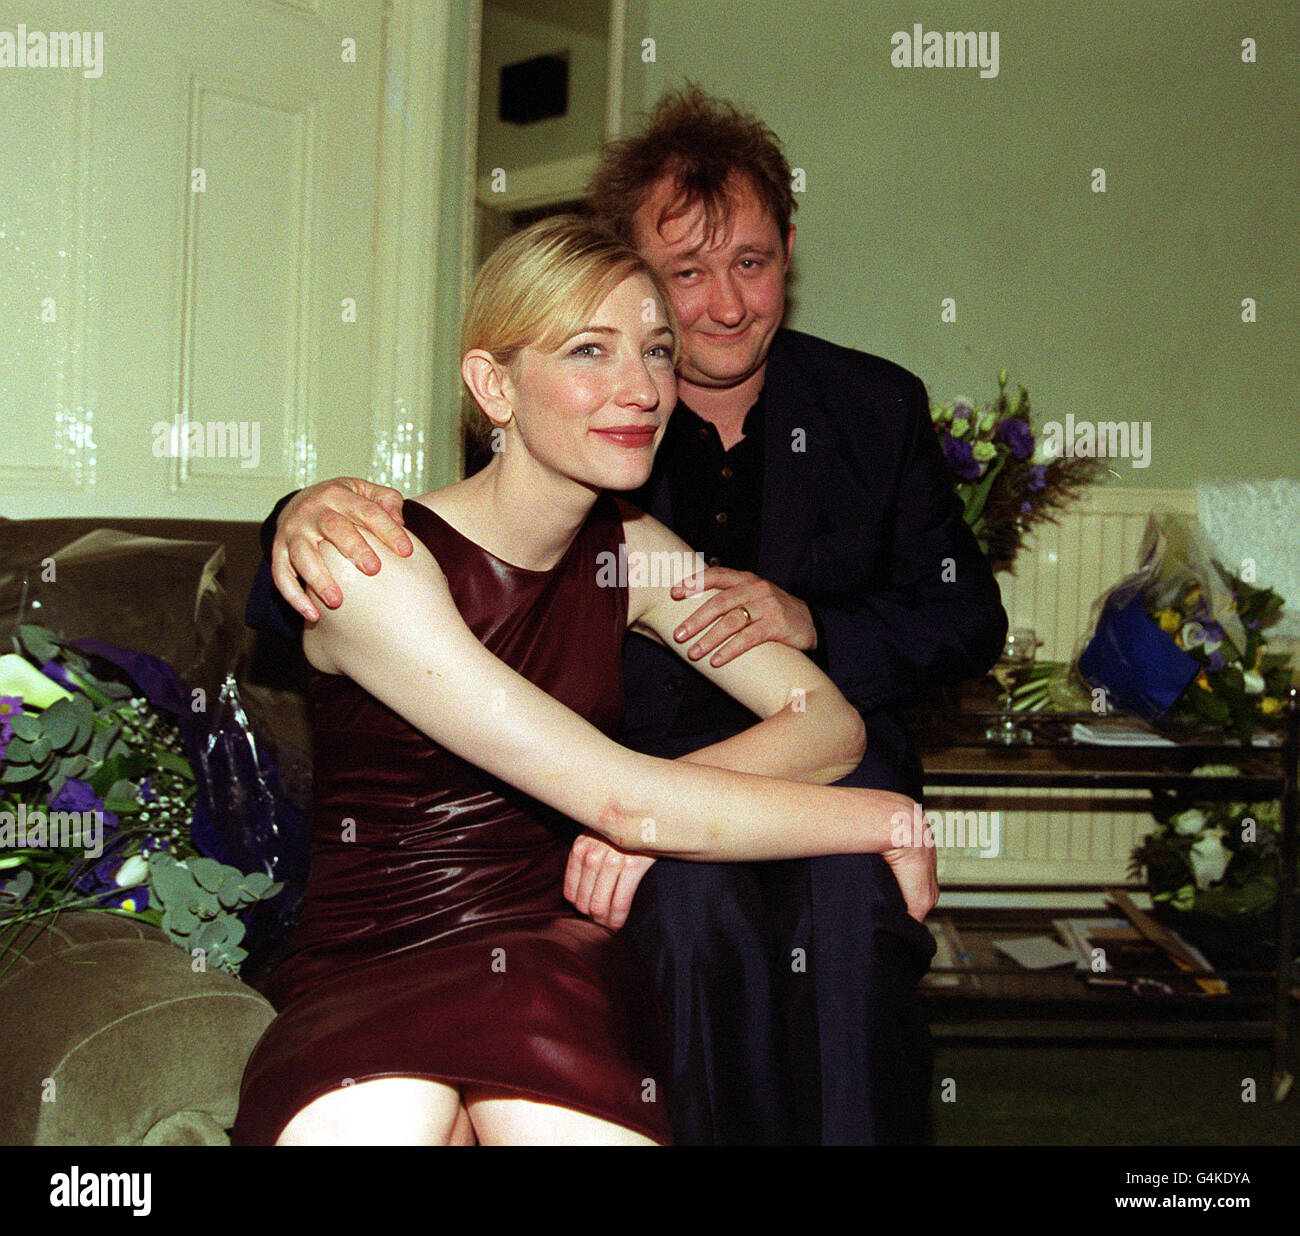 L'actrice nommée aux Oscars Cate Blanchett, avec son mari Andrew Upton, dans son dressing, après avoir fait ses débuts sur la scène du West End. Blanchett joue le rôle de Susan Traherne dans l'hôtel The Plenty de David Hare, au Albery Theatre de Londres. Banque D'Images